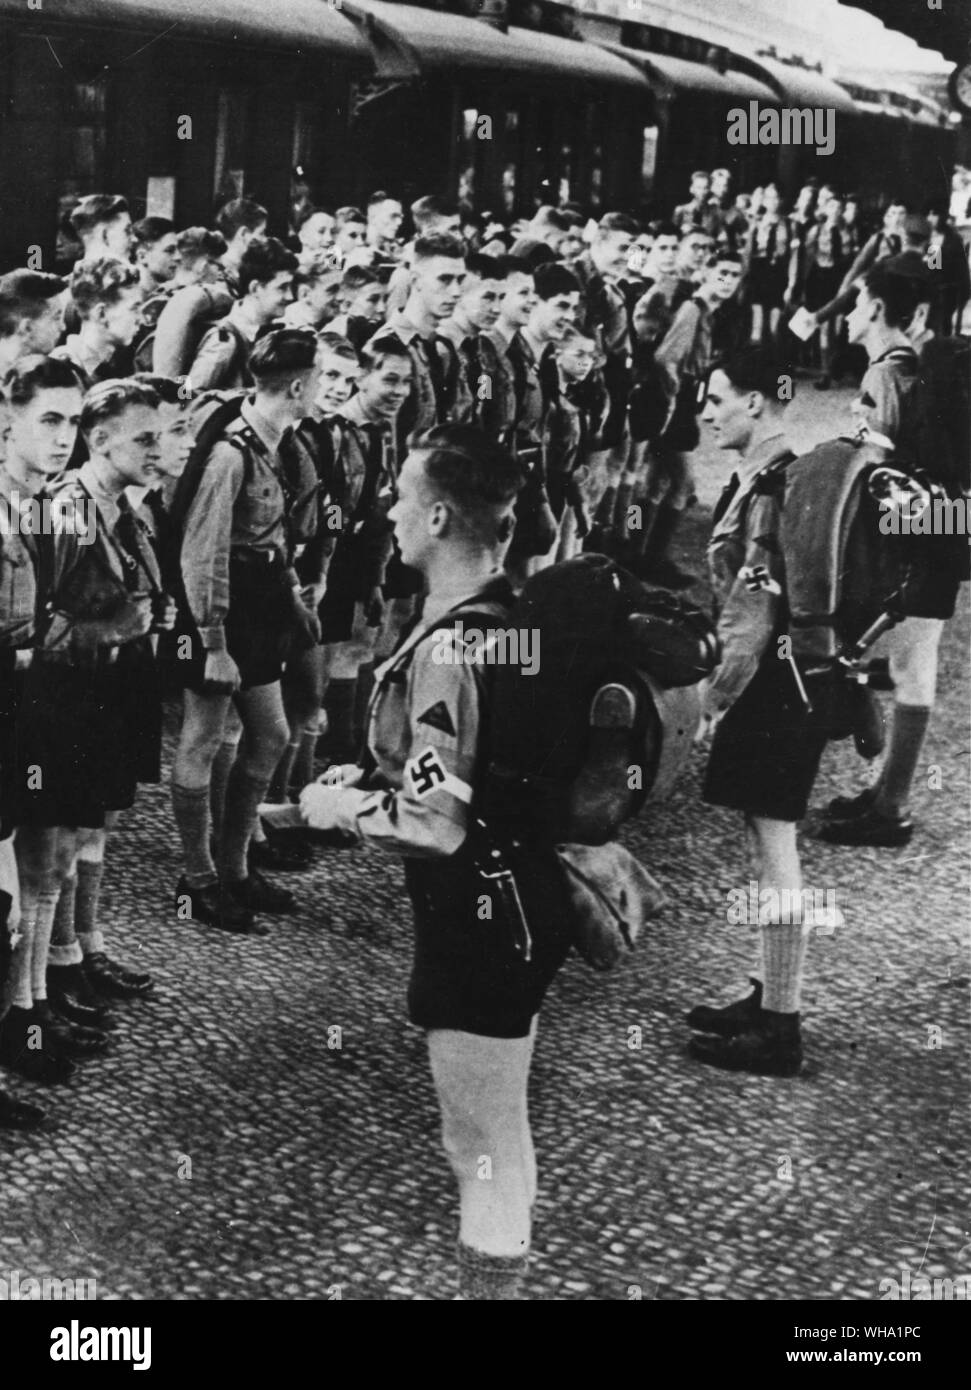 WW2: Junge Deutsche Jungen zu einem Teil der Nationalsozialistischen Partei, in der Hitler Jugond (Hitler Youth), ein Nazi geförderten Youth Scheme. Zwangsarbeit und Militärdienst wurden, nachdem die Partei erhalten die höchste Macht in Deutschland etabliert. Stockfoto